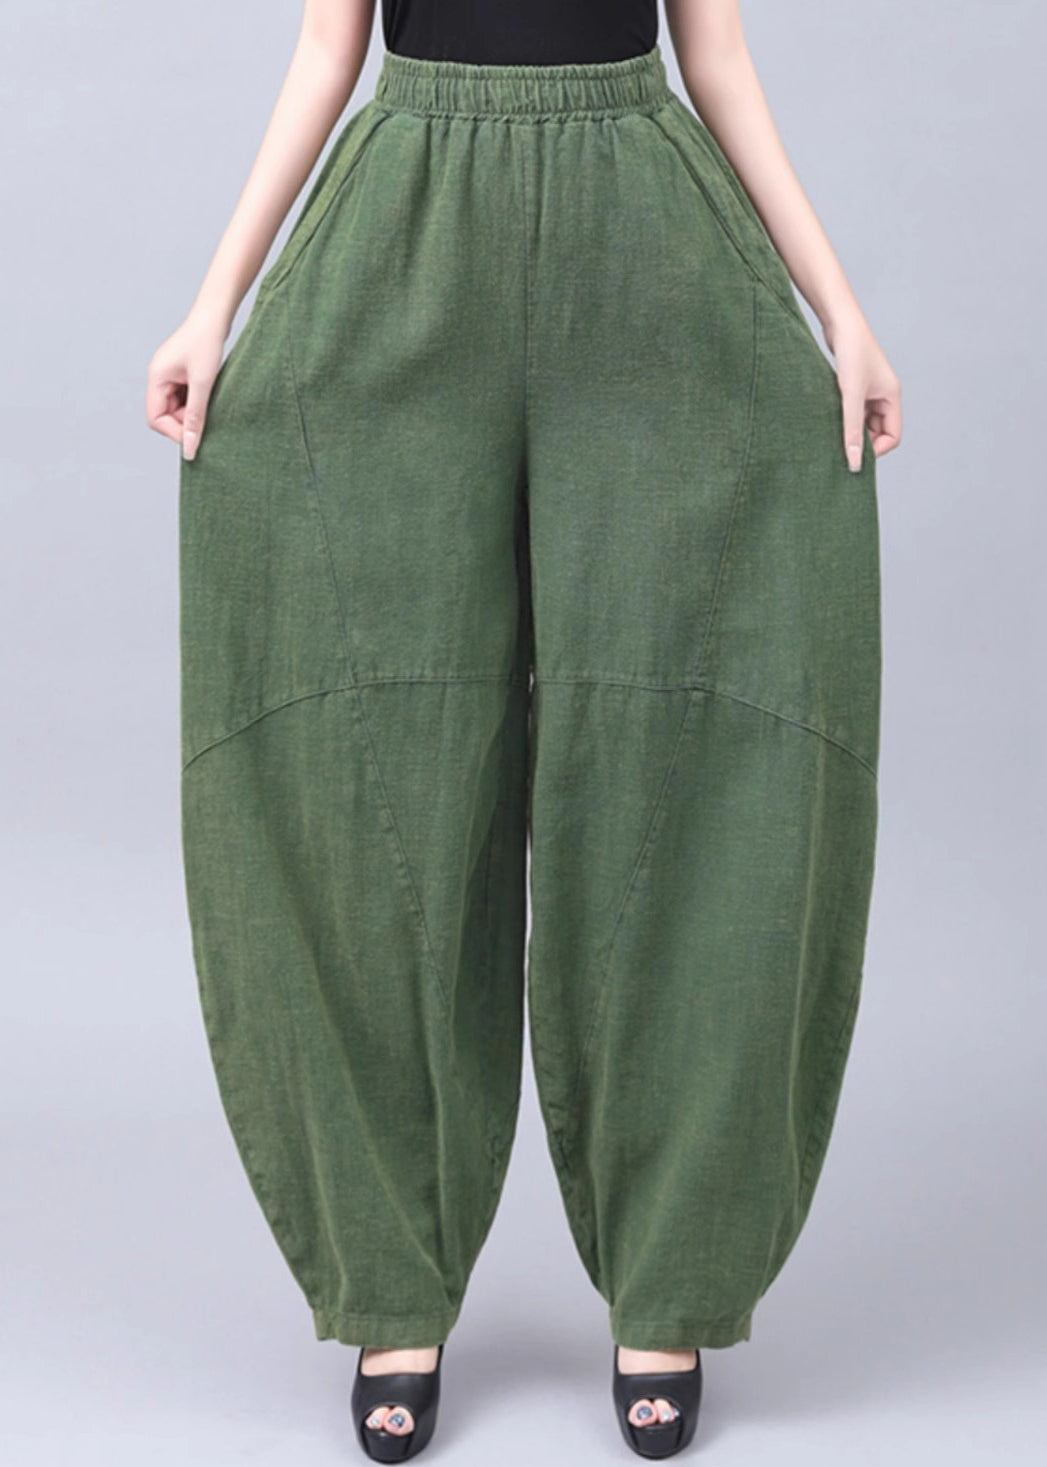 New Green Pockets Elastic Waist Cotton Pants Summer